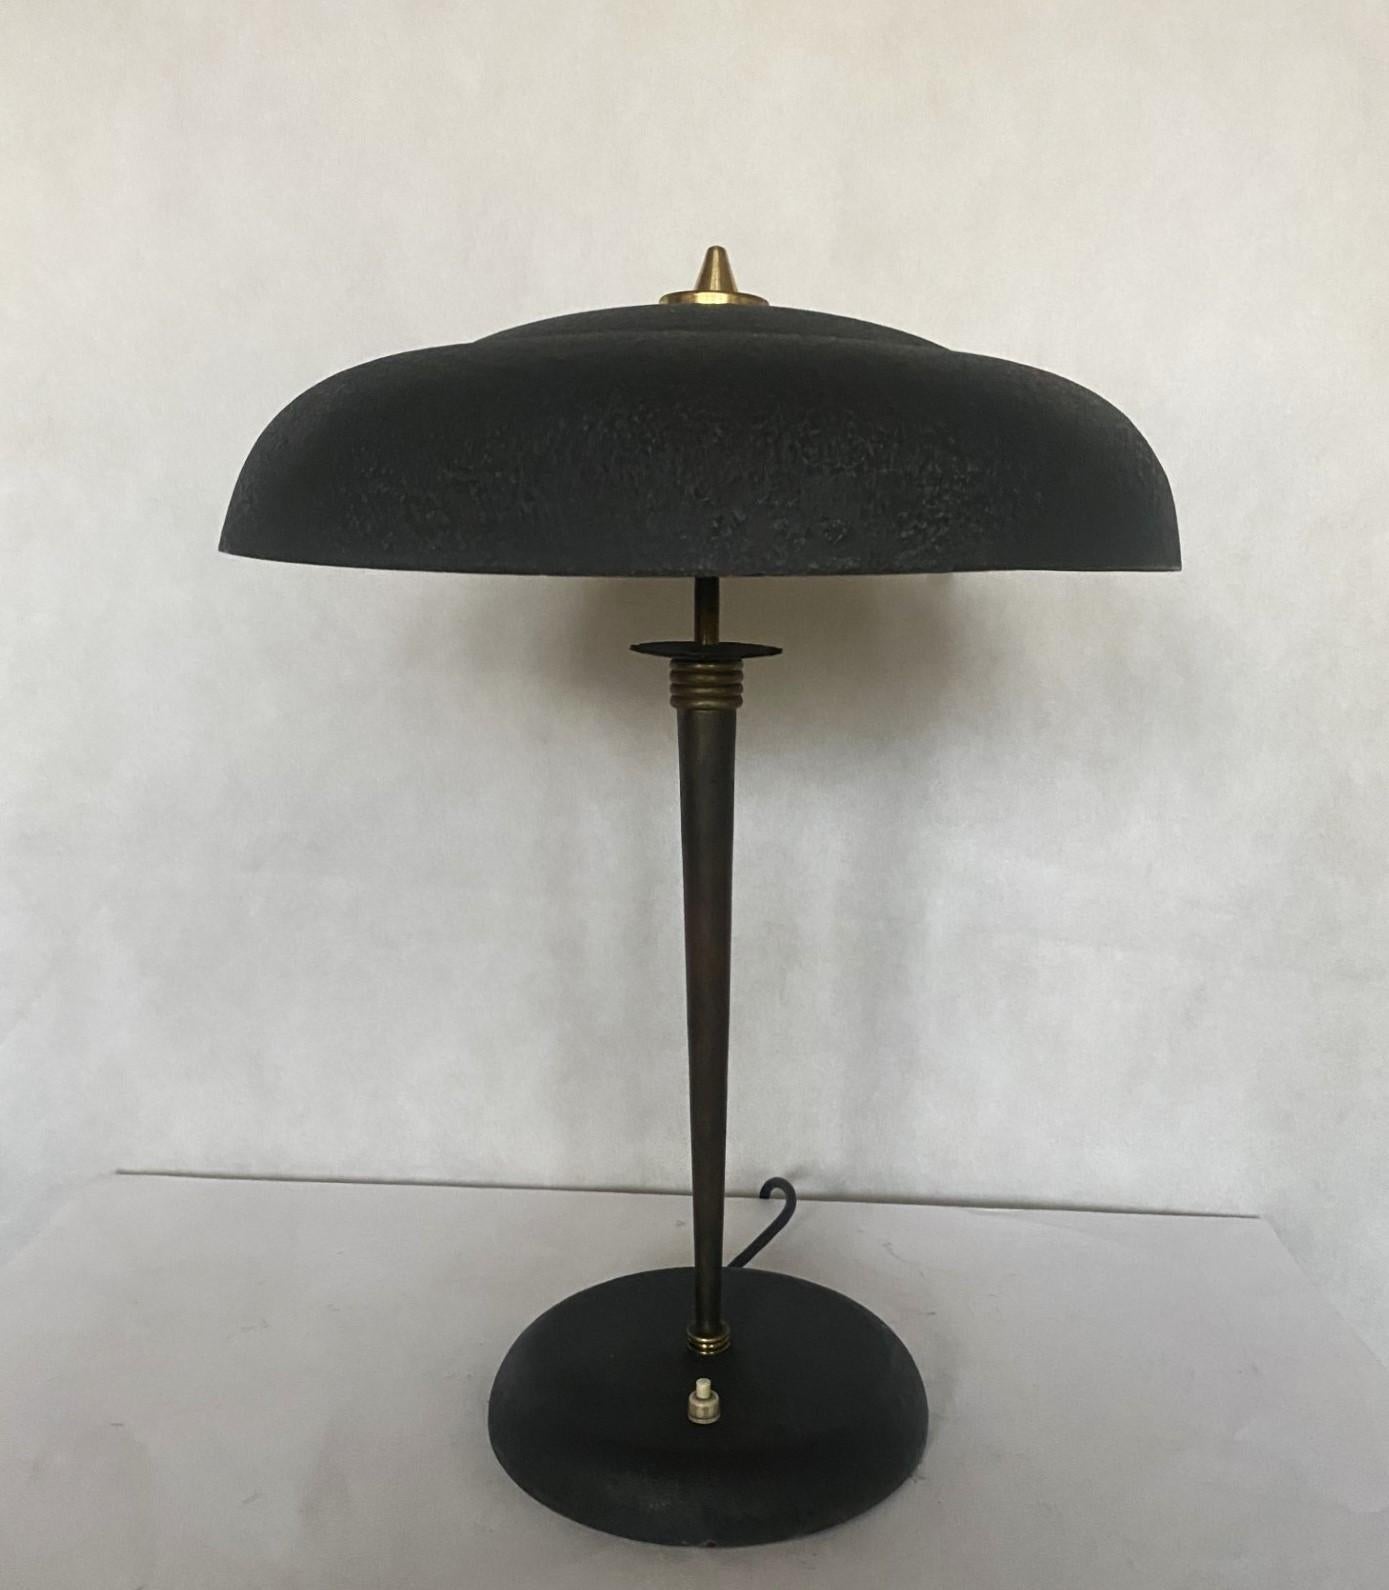 Mid-Century Modern Midcentury Stilnovo Desk or Table Lamp Brass Black Enameled Metal, Iataly, 1950s For Sale